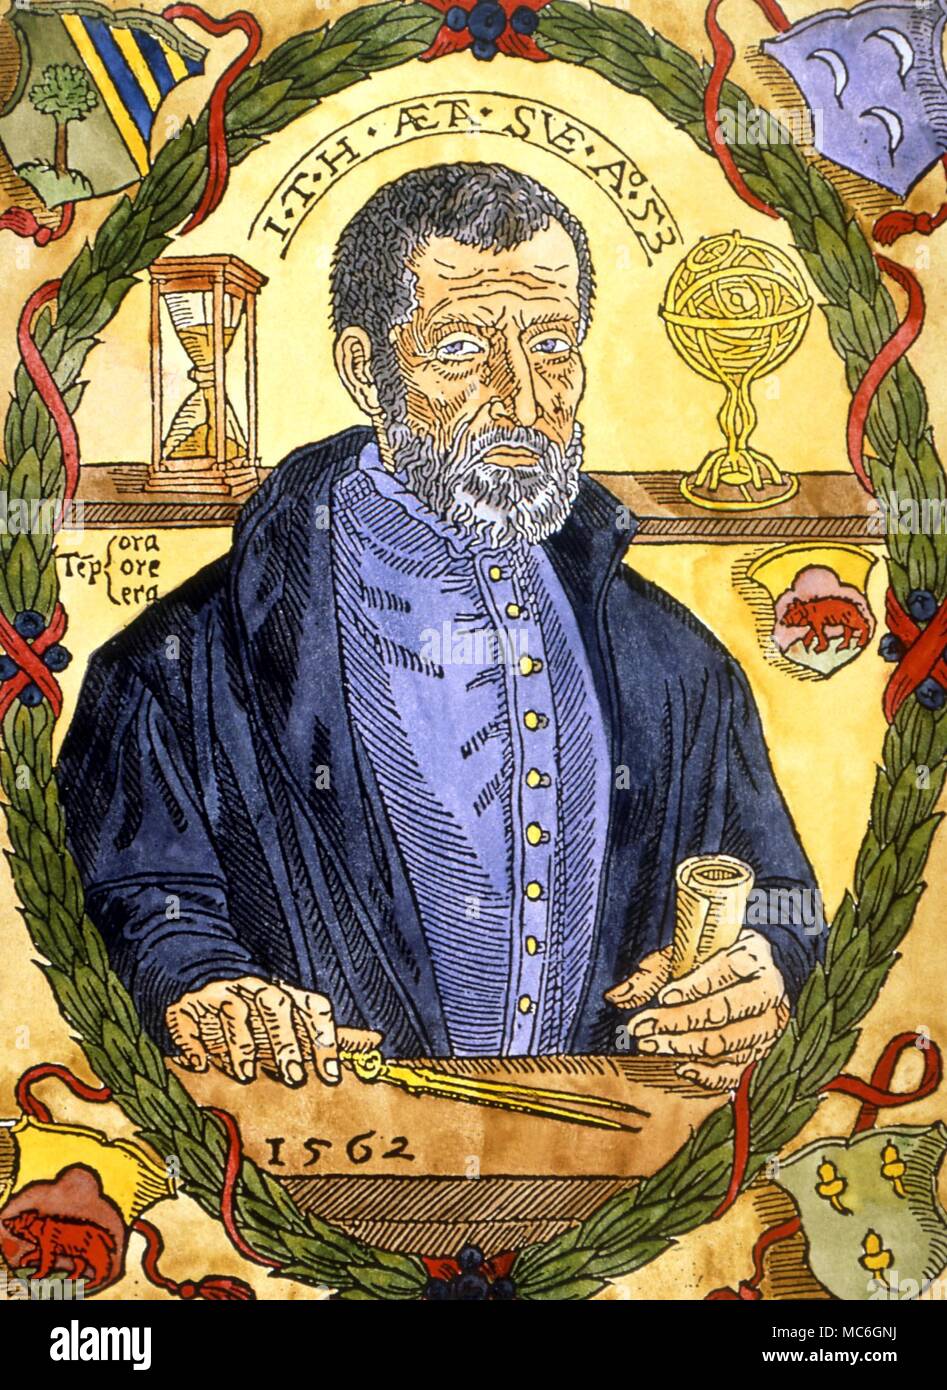 Johannes Kepler: Las leyes del movimiento planetario - Chicks Gold